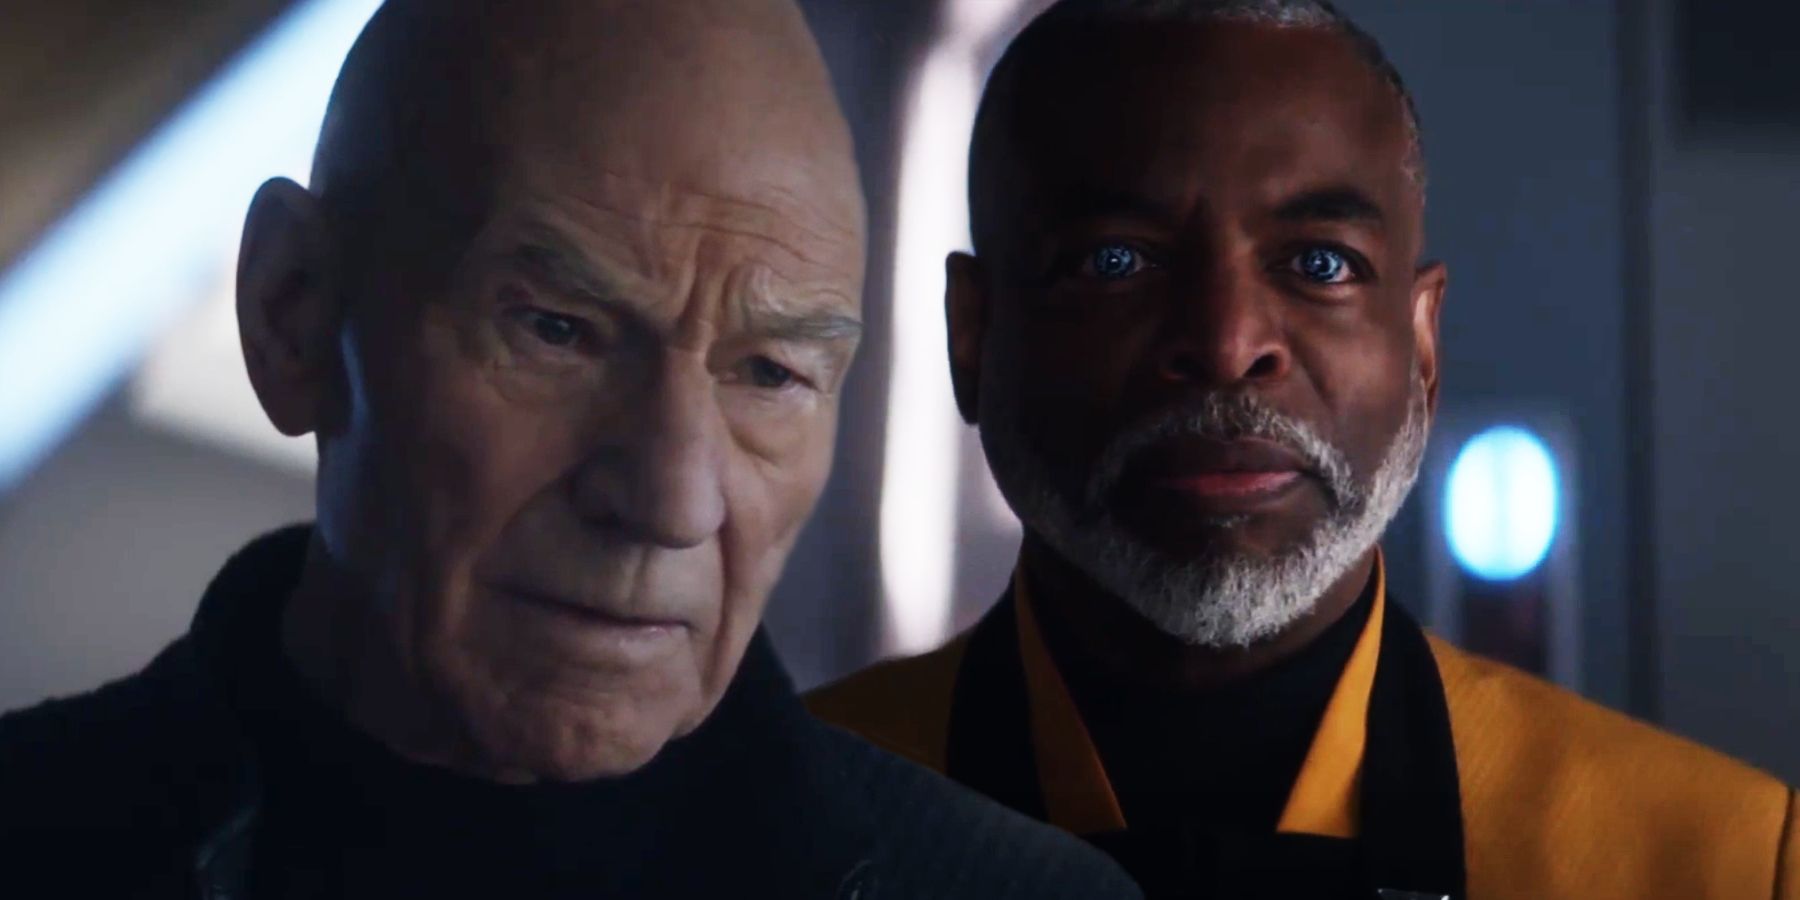 Star Trek Picard Season 3 Episode 6 Ending Explained